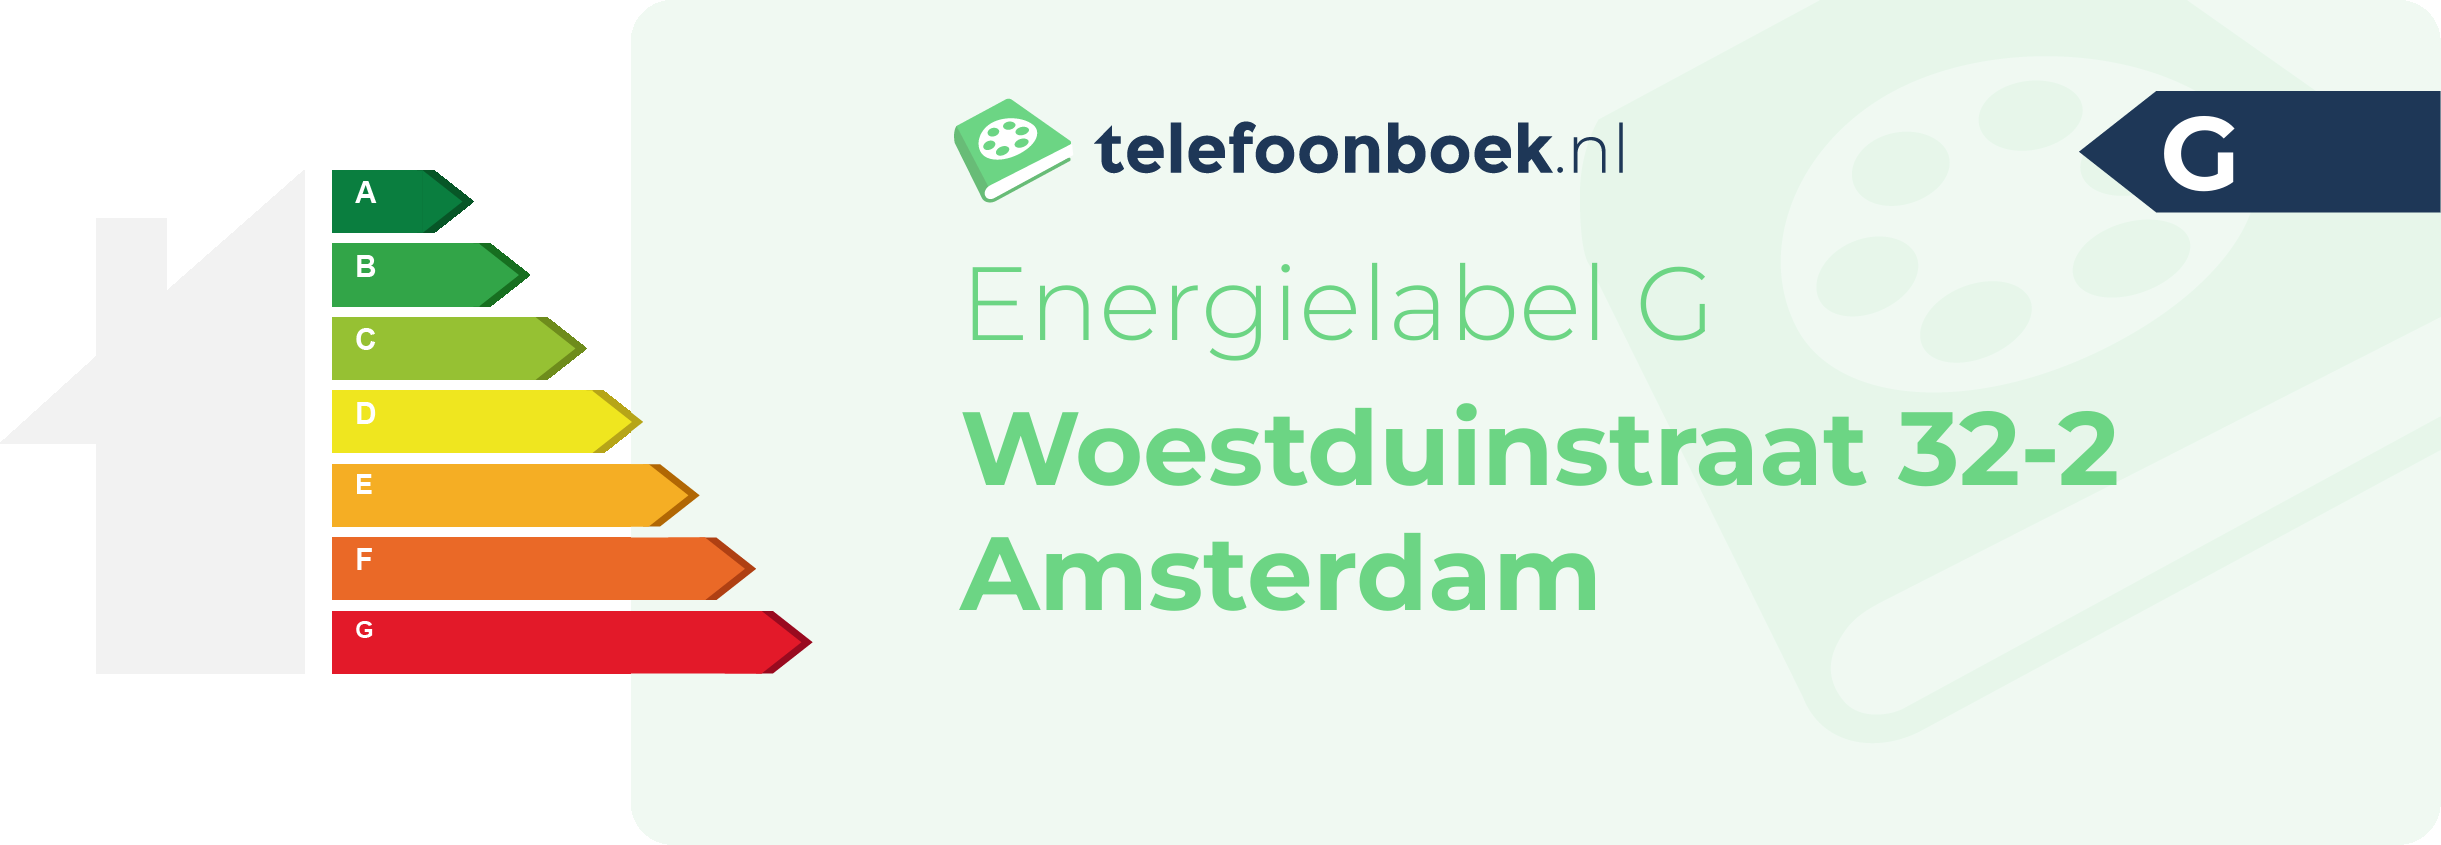 Energielabel Woestduinstraat 32-2 Amsterdam